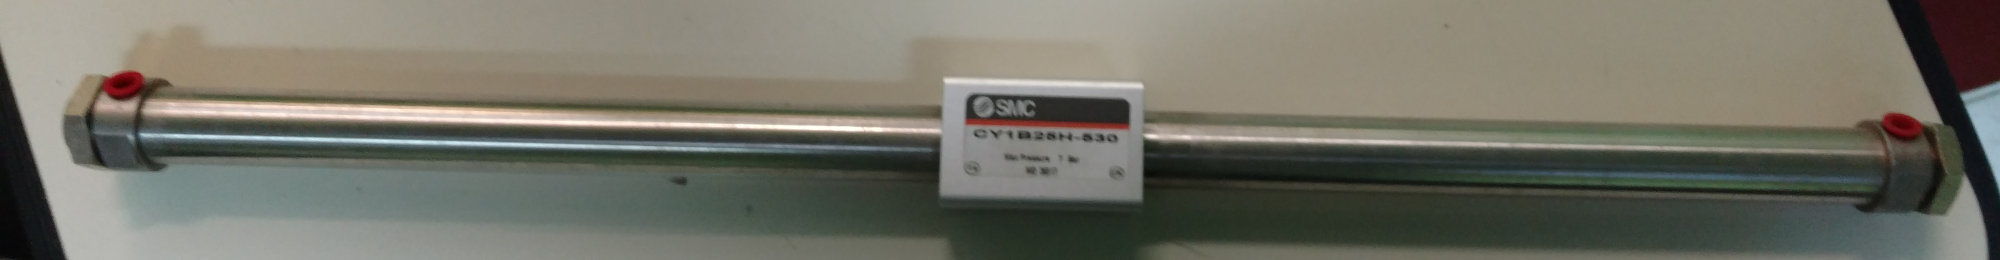 SMC INR-498-012C-X012 